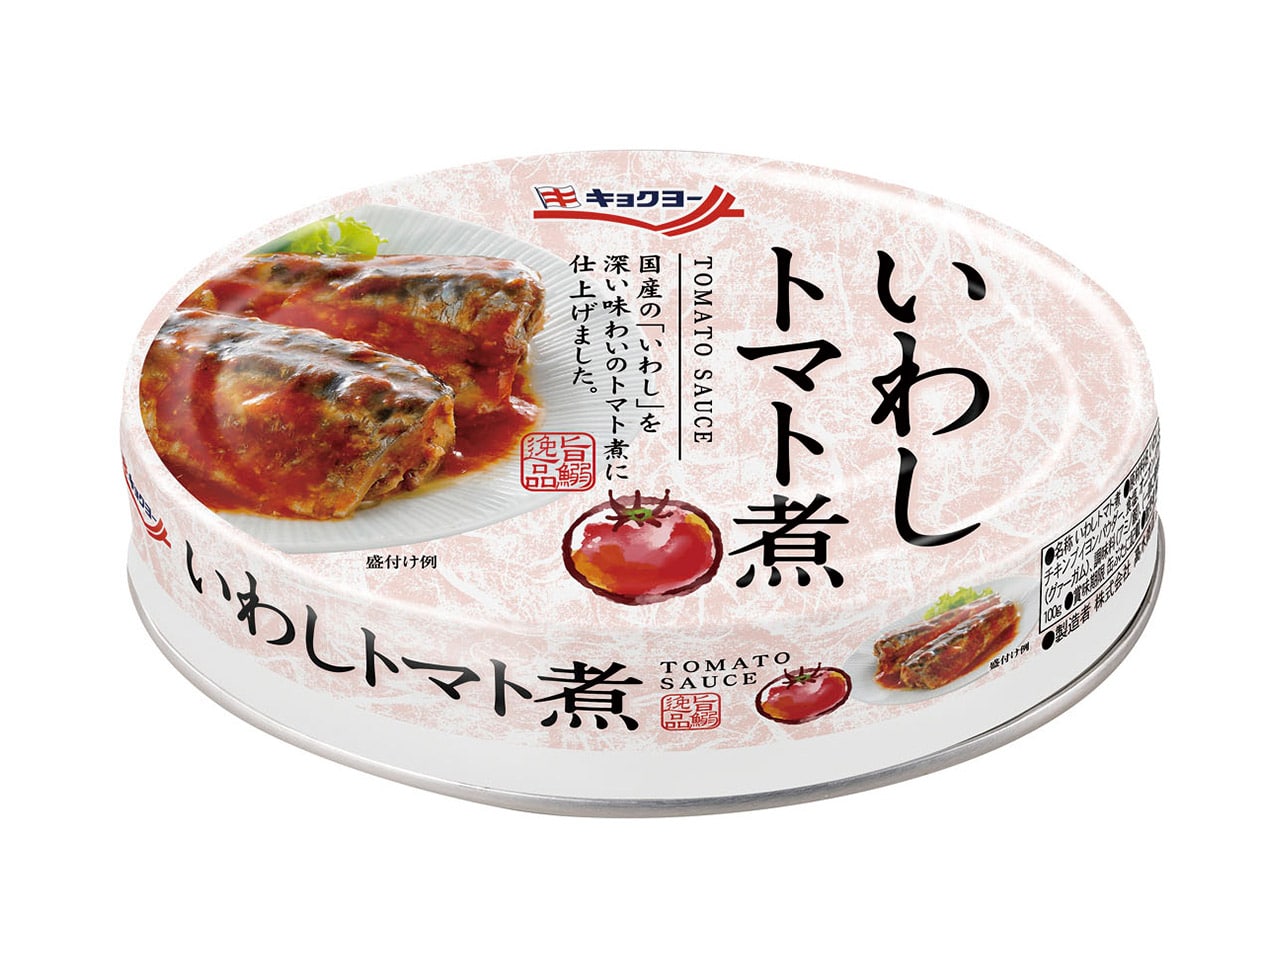  いわしトマト煮【24缶セット】